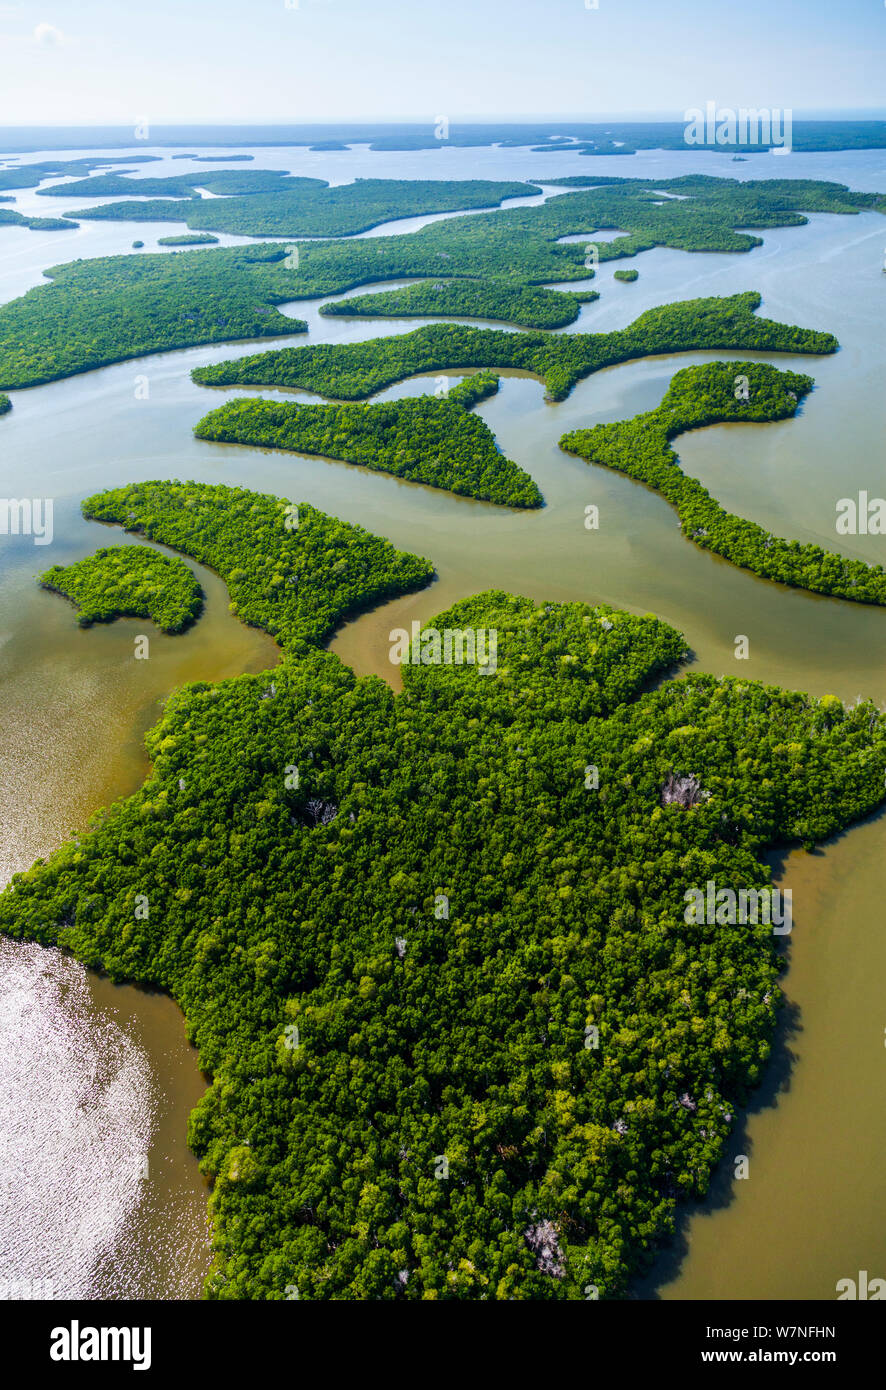 Veduta aerea subtropicale paludi di mangrovie del Parco nazionale delle Everglades. Florida, Stati Uniti d'America, febbraio 2012. Foto Stock